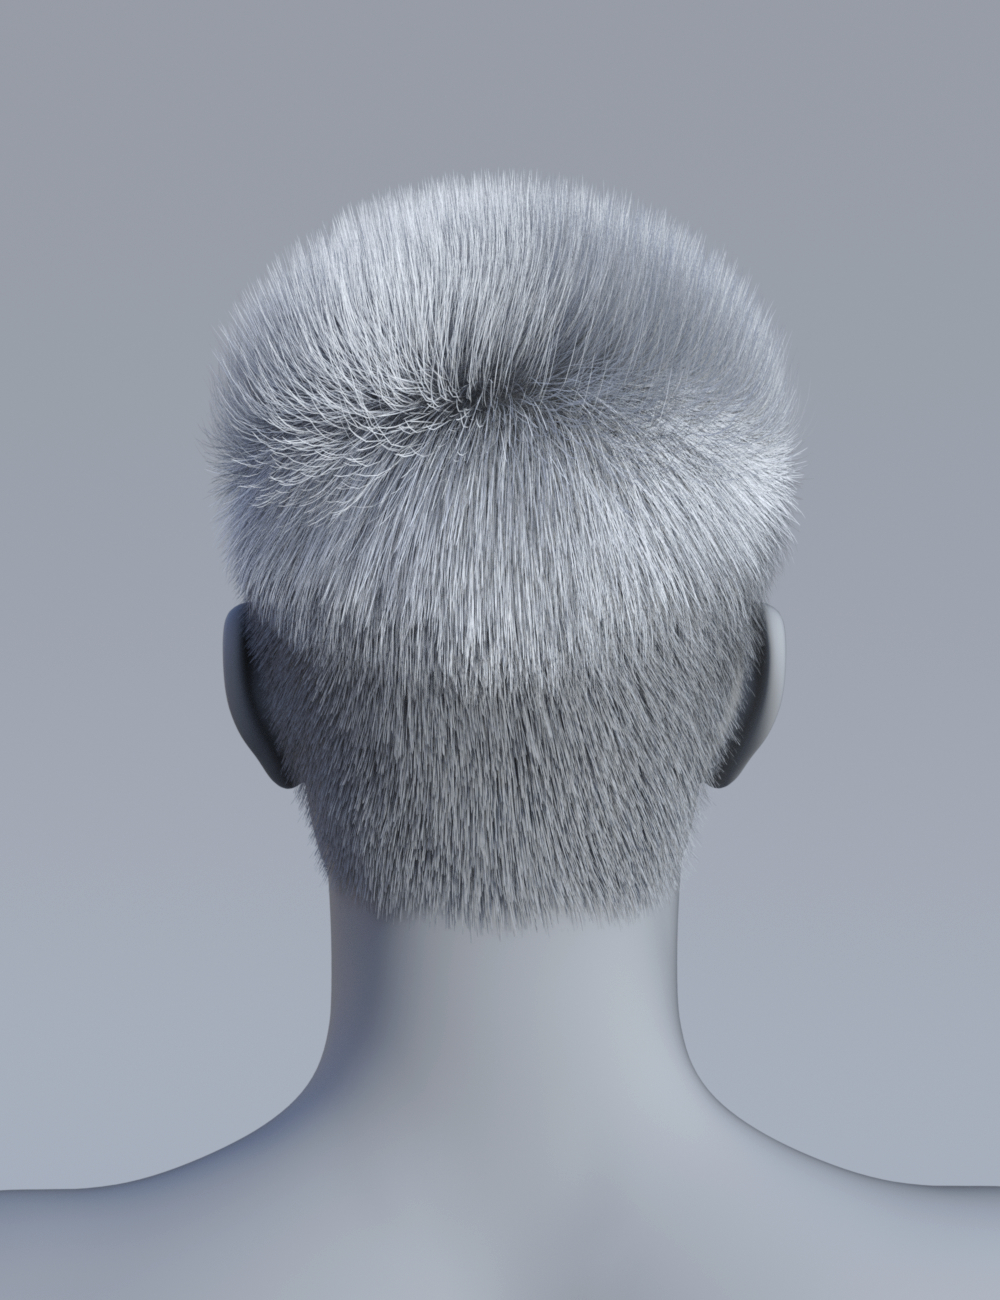 Wilson Hair for Genesis 8 Males by: Vyusur, 3D Models by Daz 3D